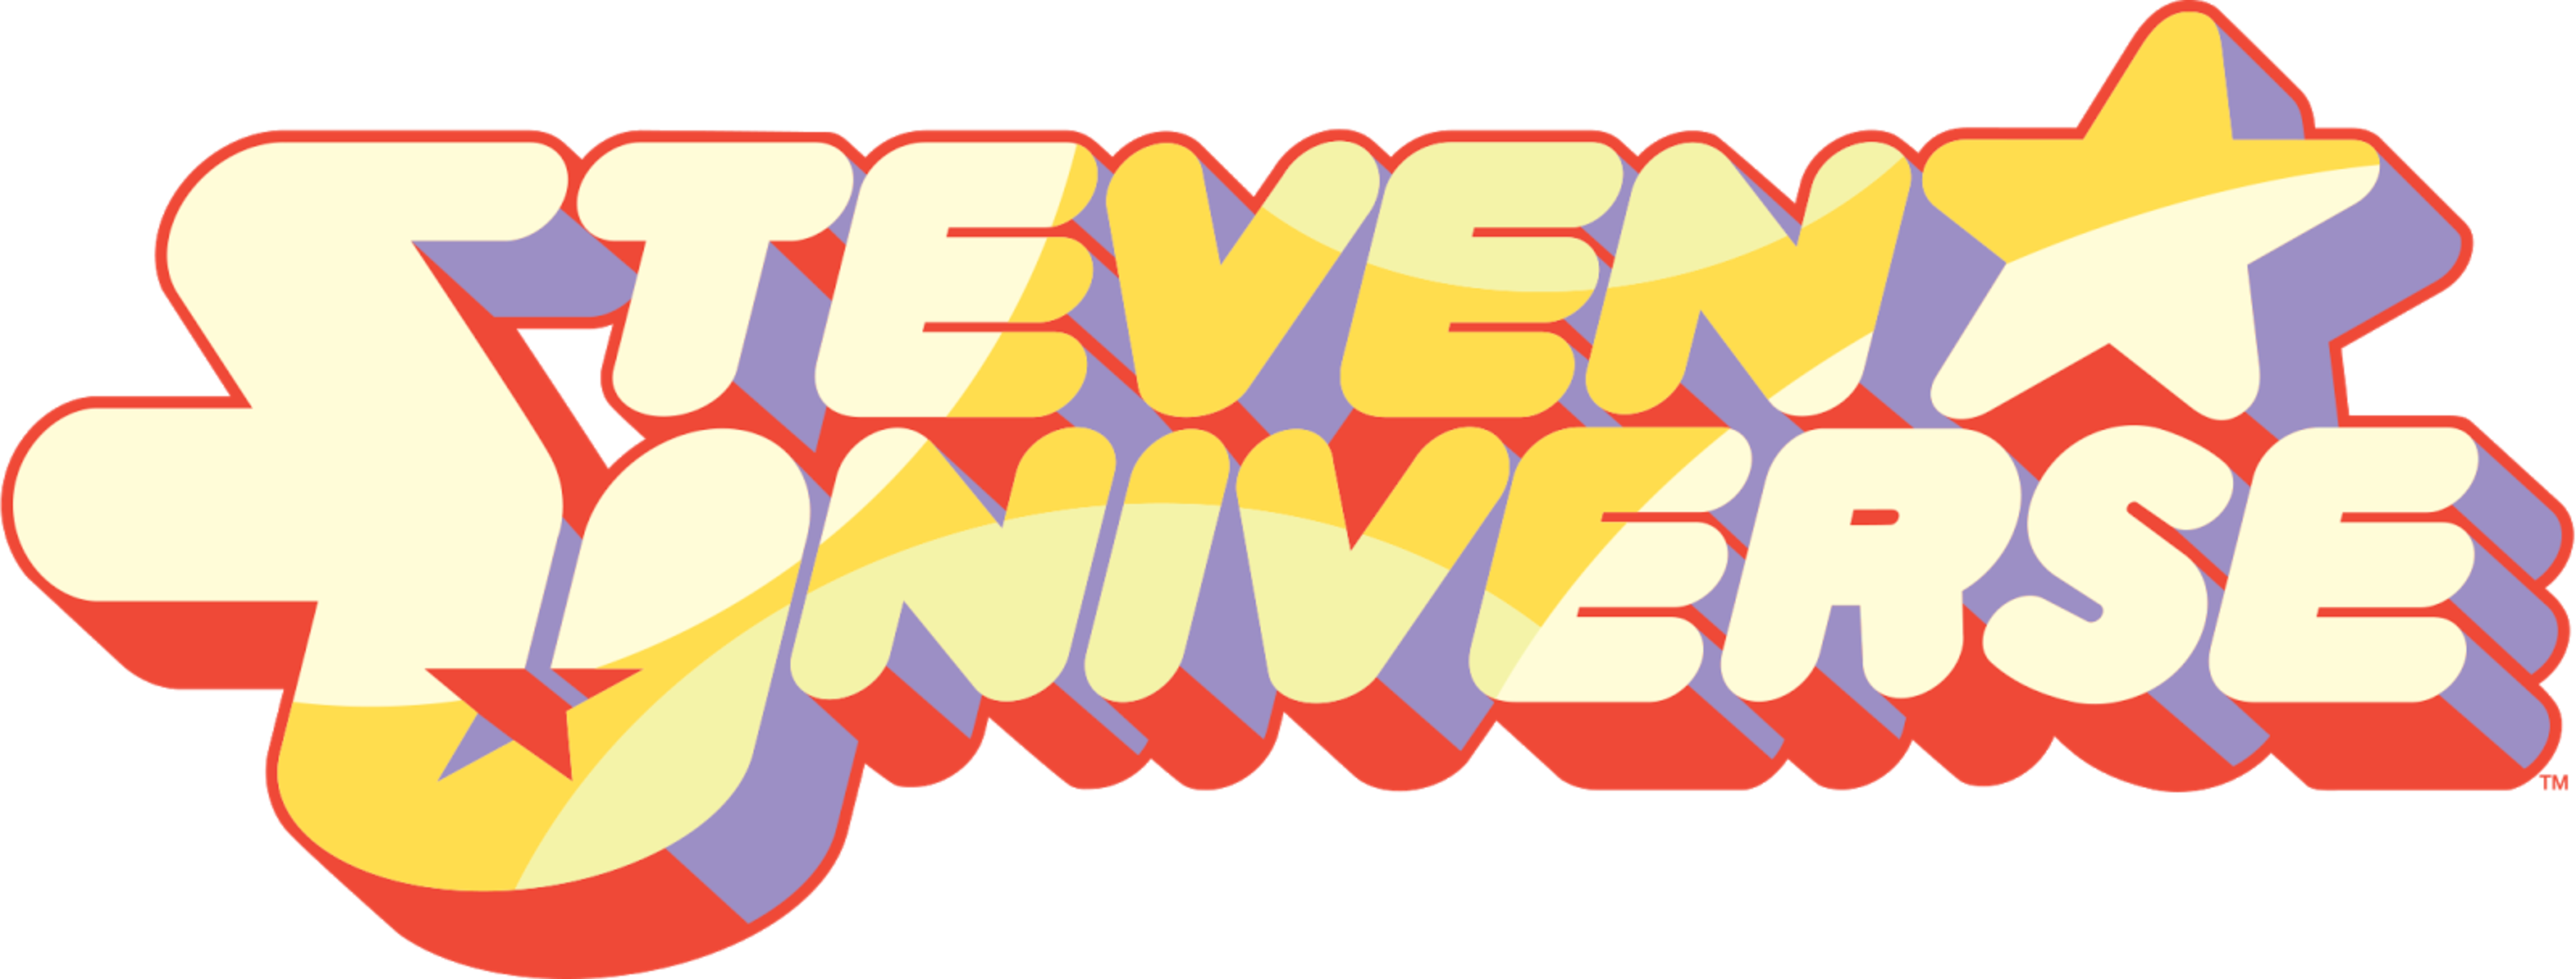 Steven Universe Complete (8 DVDs Box Set)